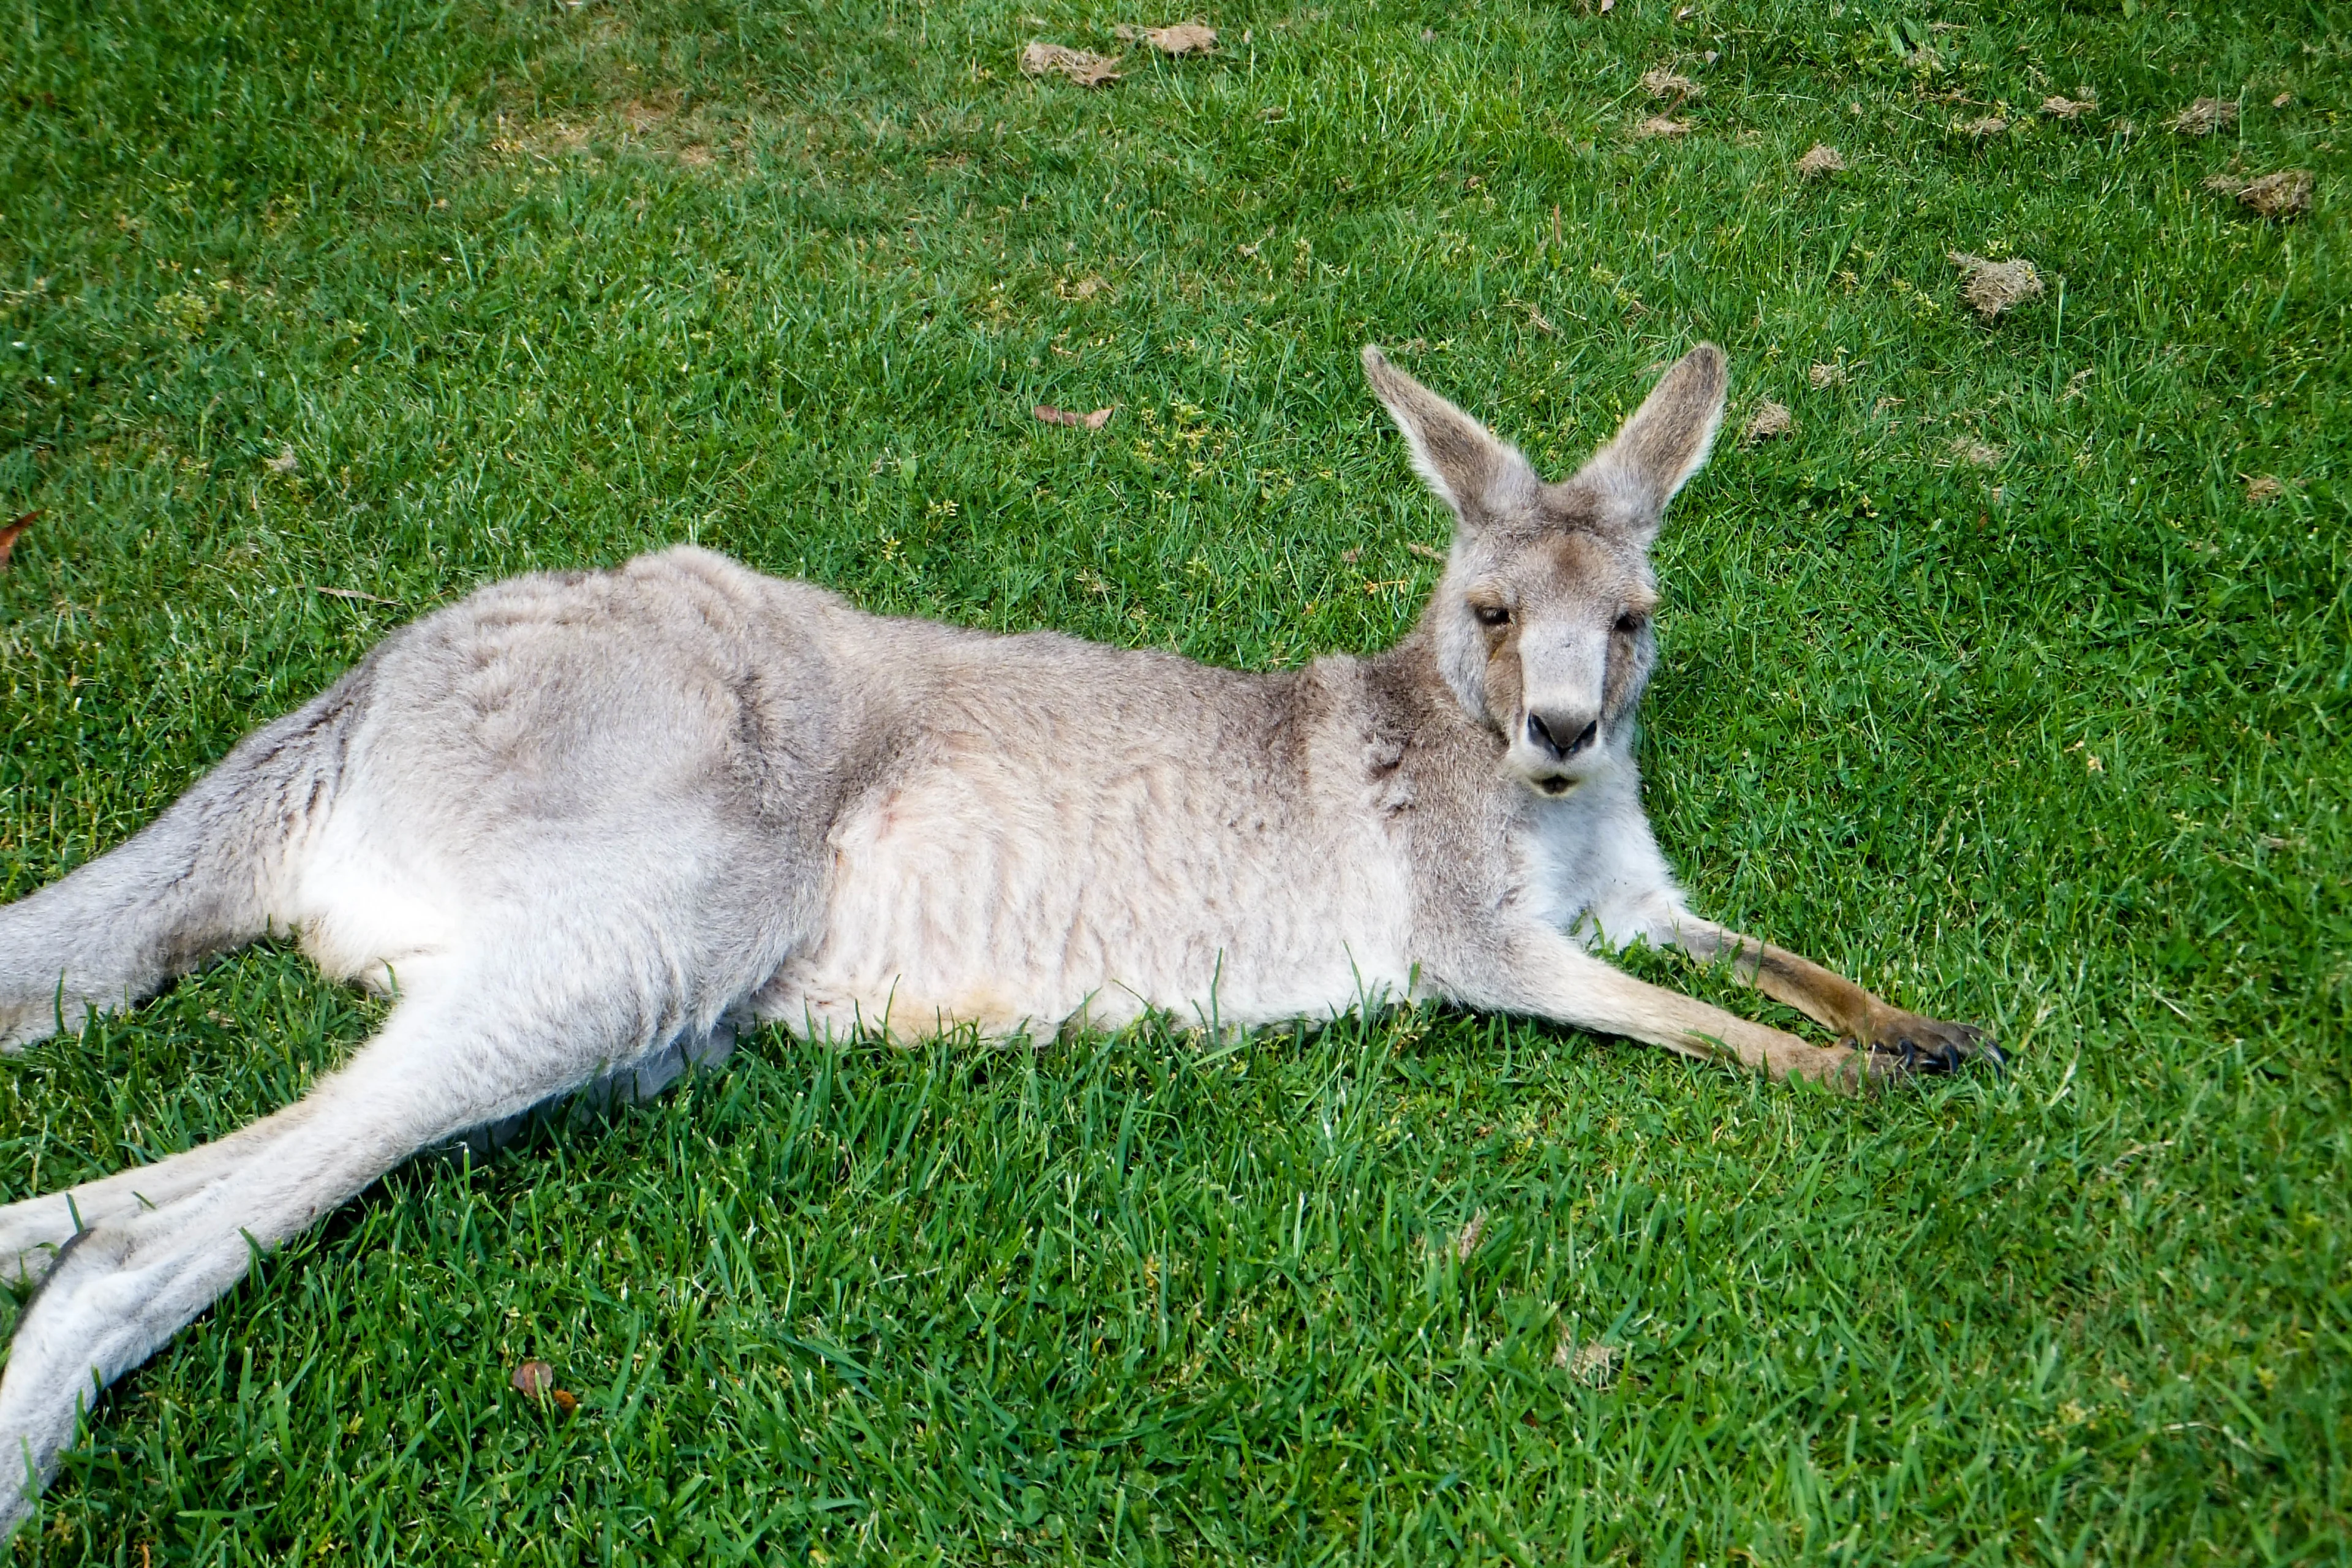 Kangaroo laying on grass